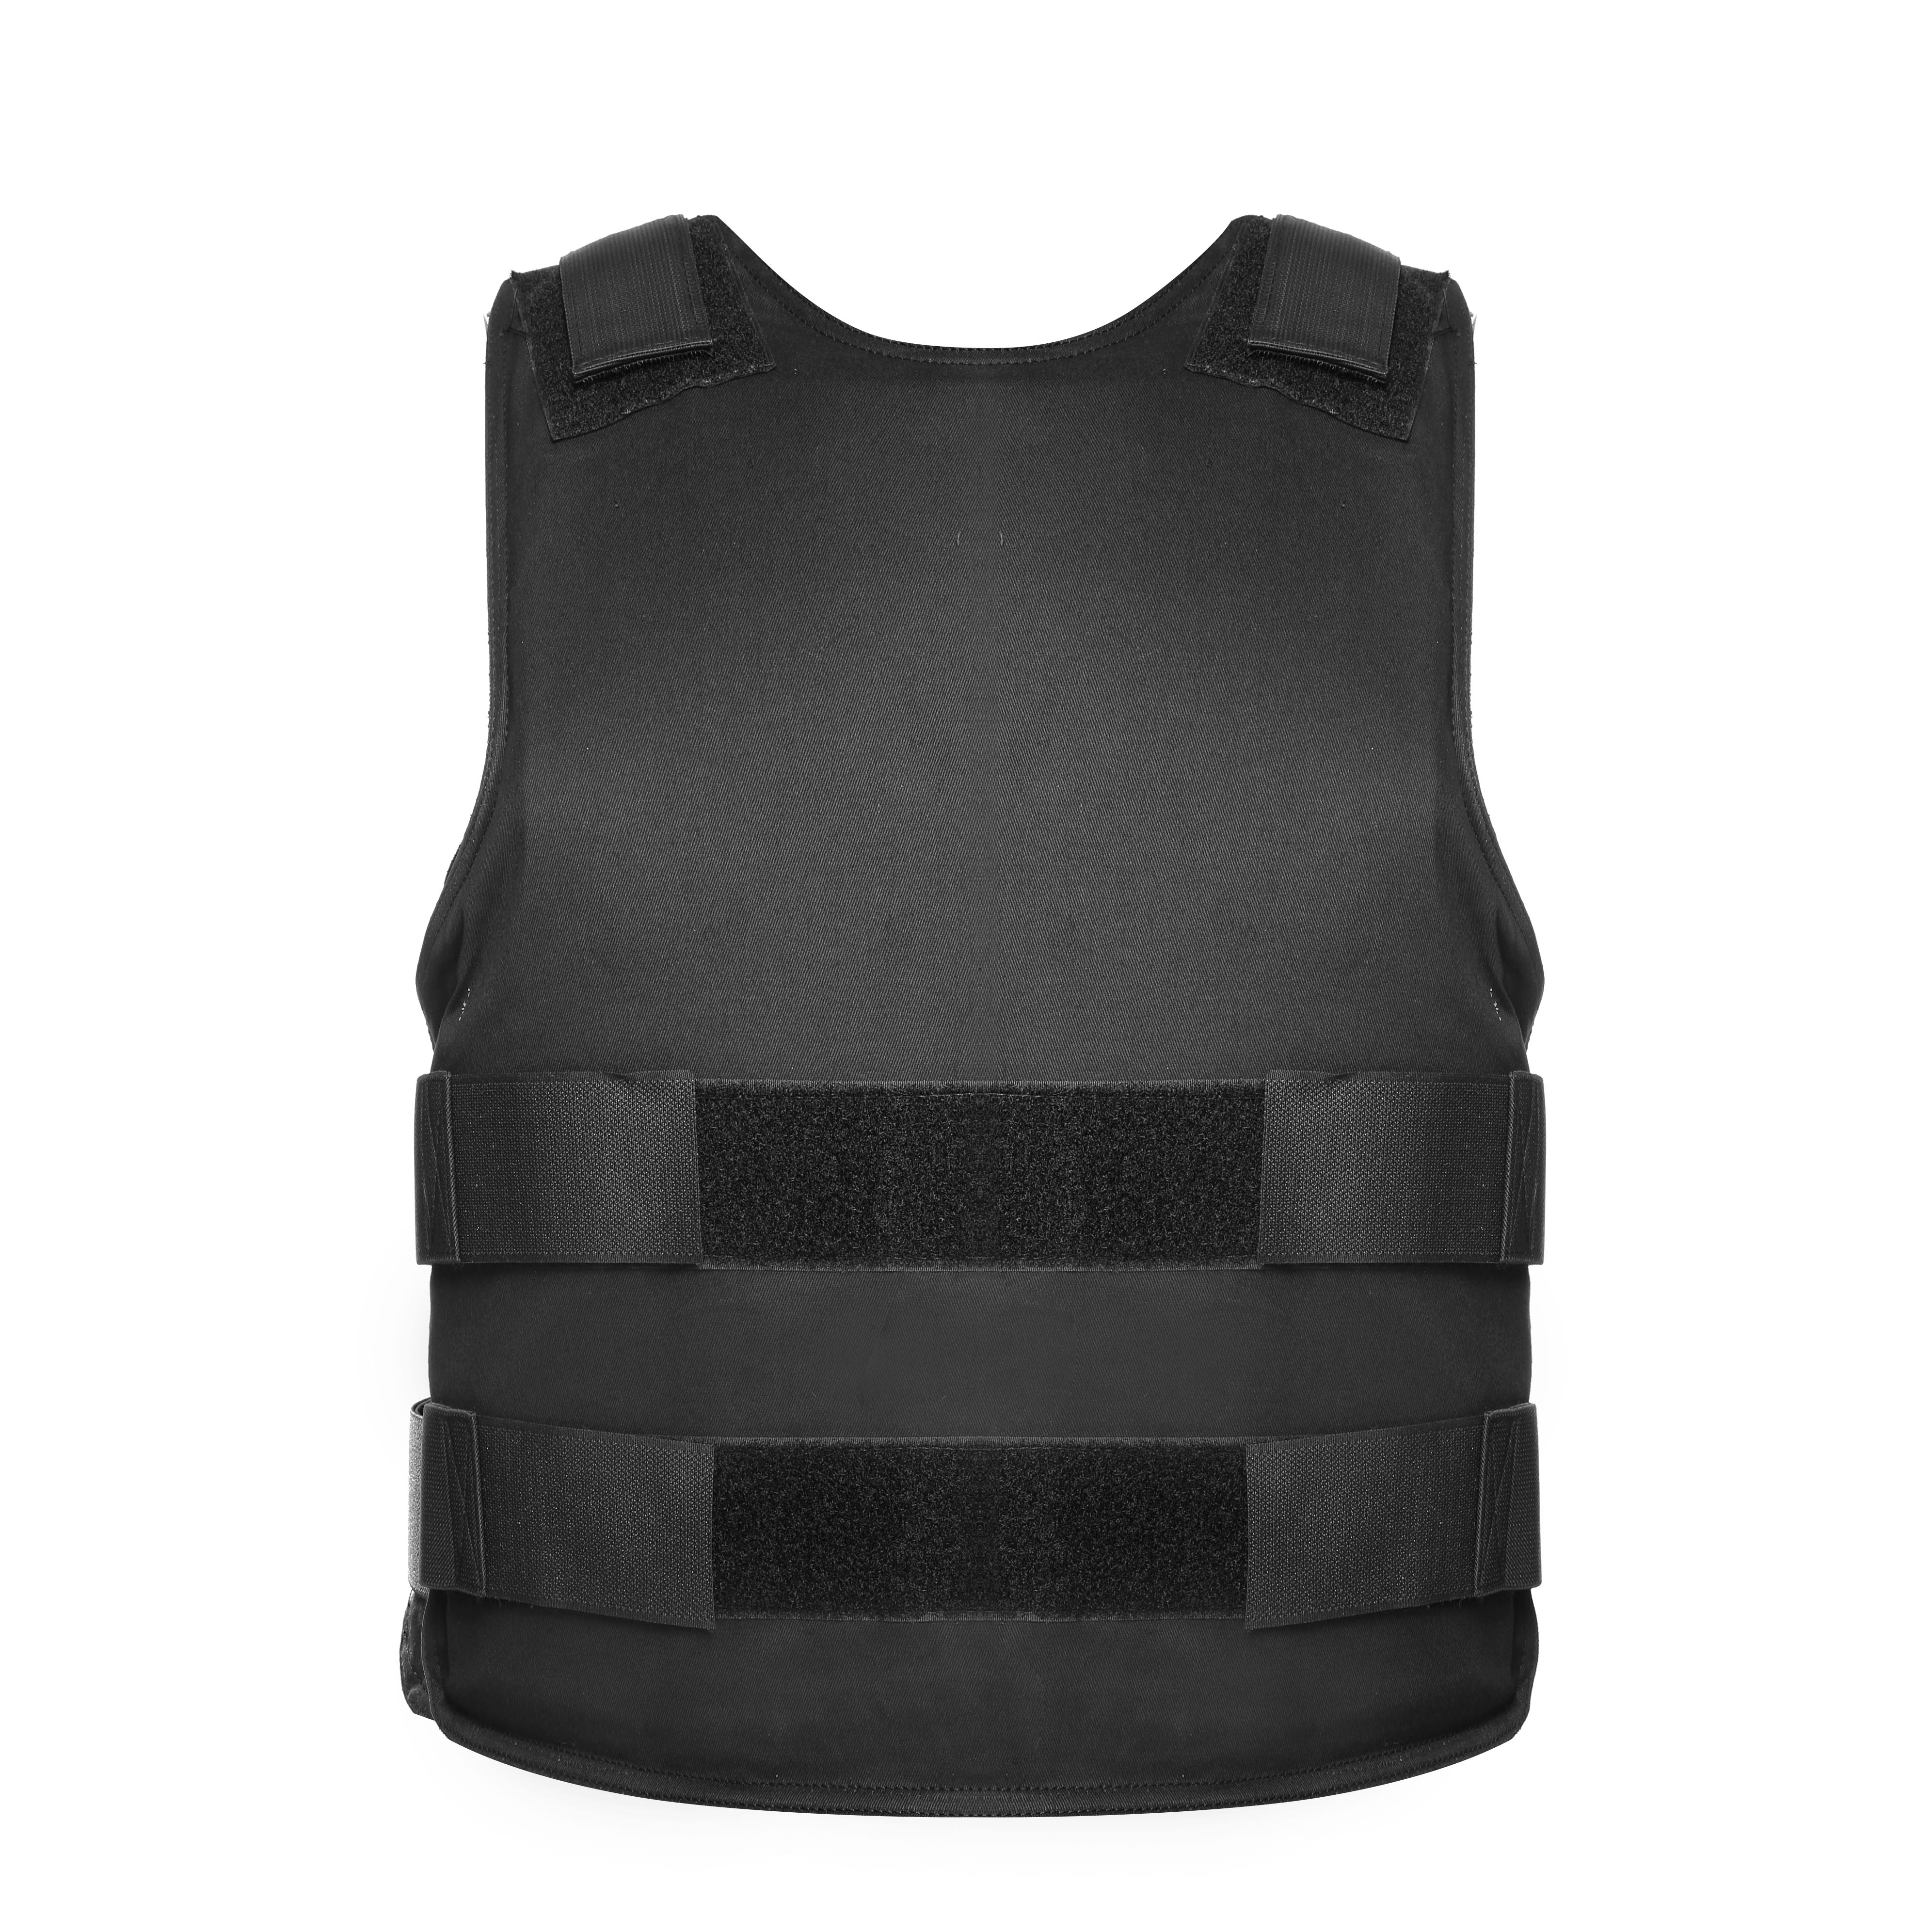 US NIJ Standard Level IIIA Bulletproof Vest